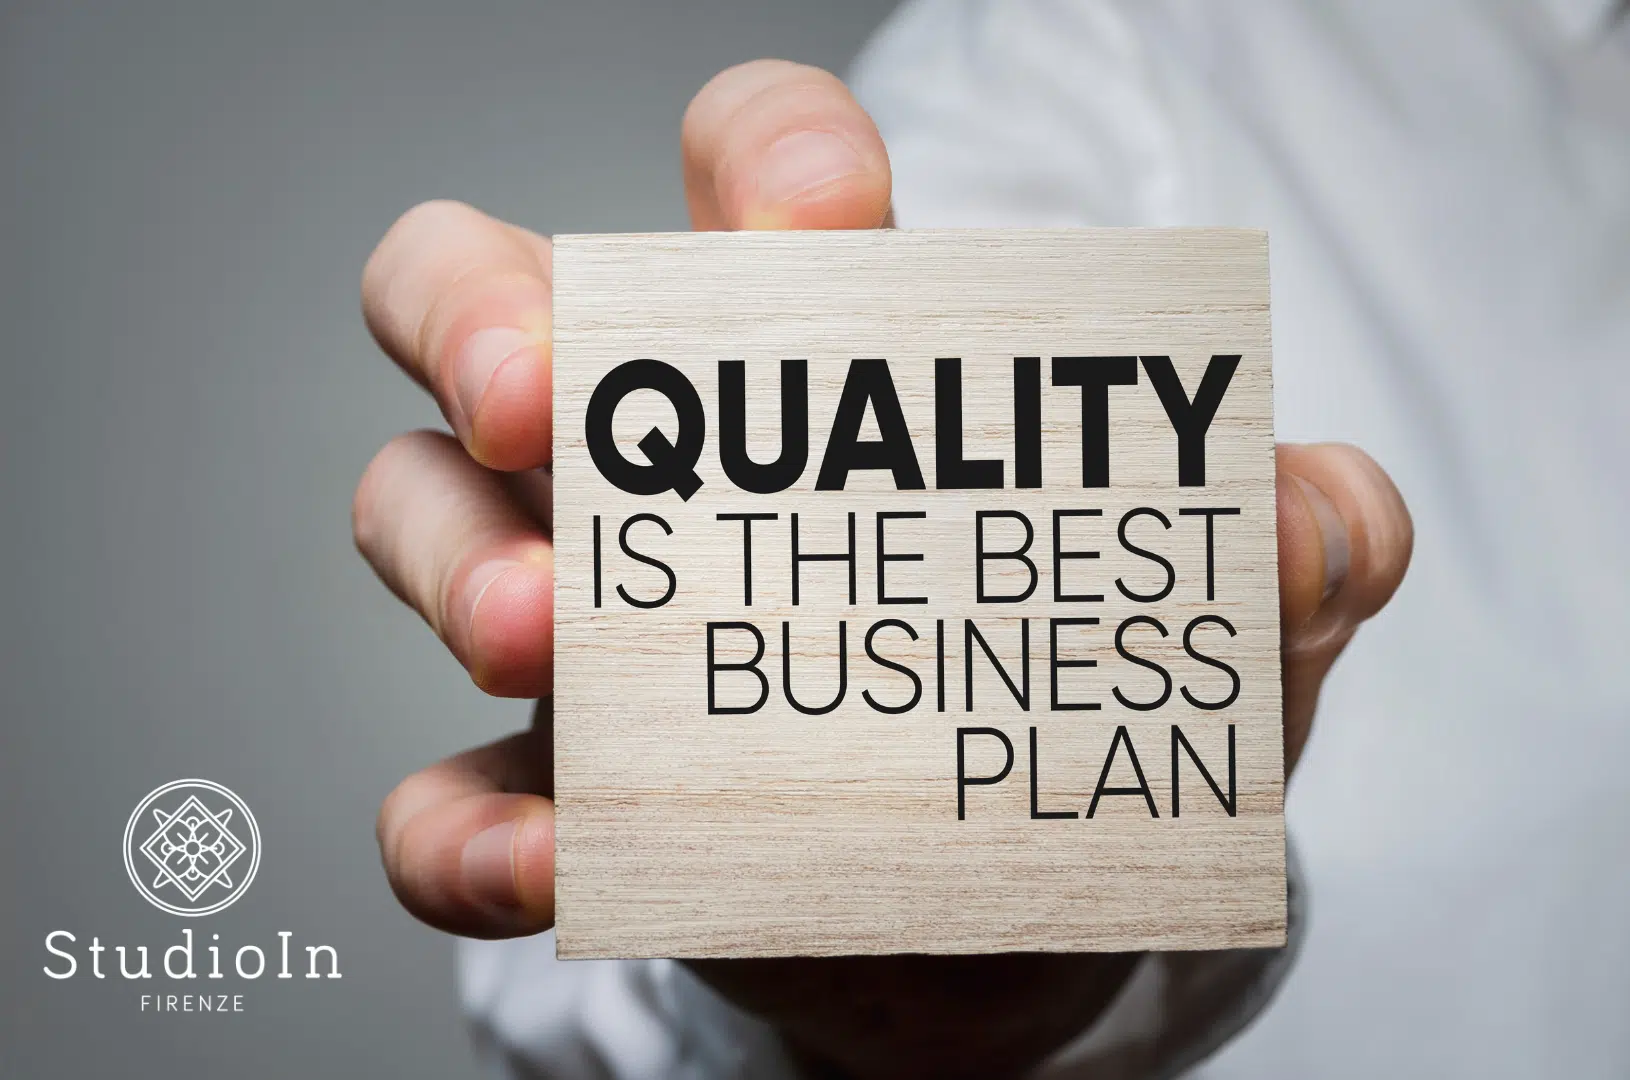 La qualità è il migliore business plan